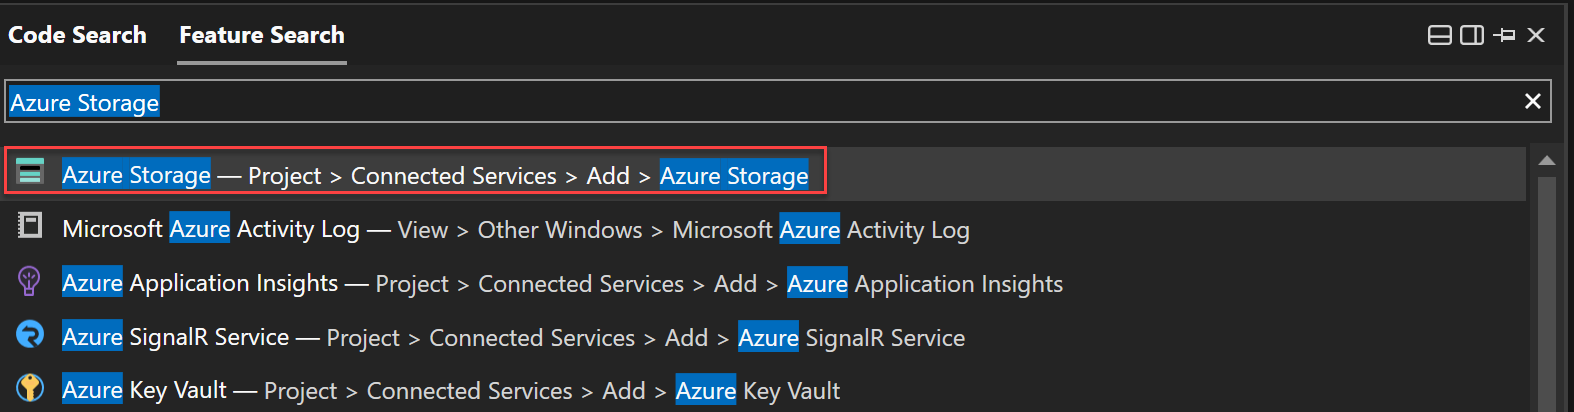 Snímek obrazovky s vyhledáváním funkcí k vyhledání služby Azure Storage